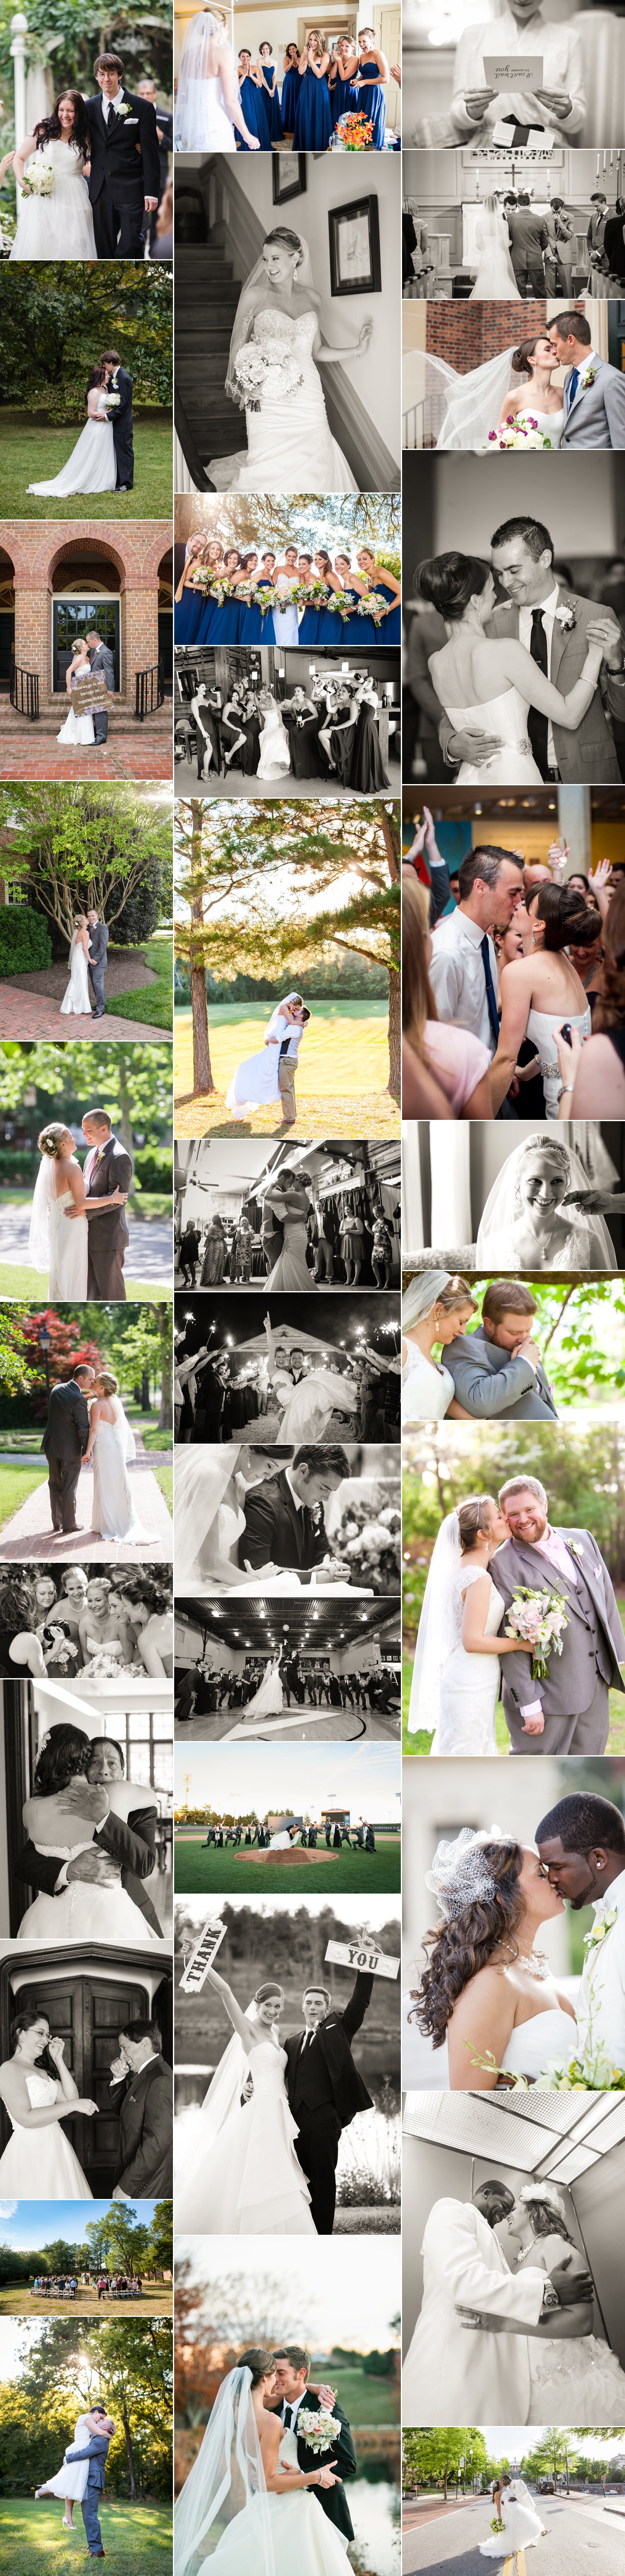 2014-Year-Review-Weddings_0004.jpg